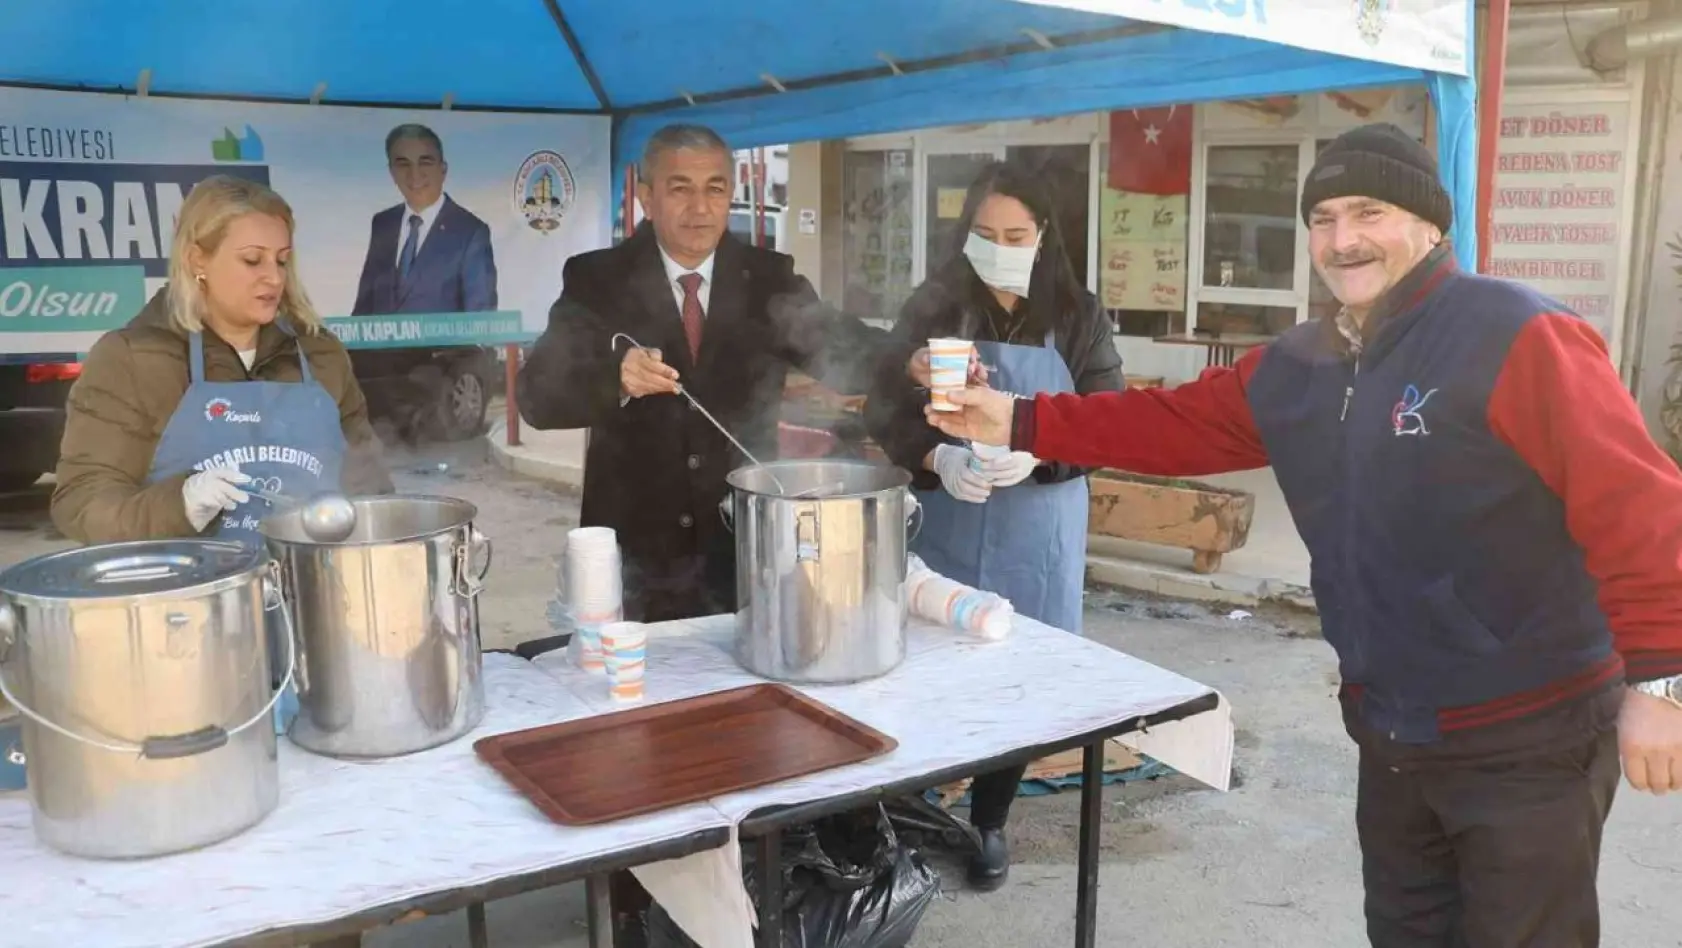 Koçarlı Belediyesi'nden vatandaşlara sıcak çorba ikramı